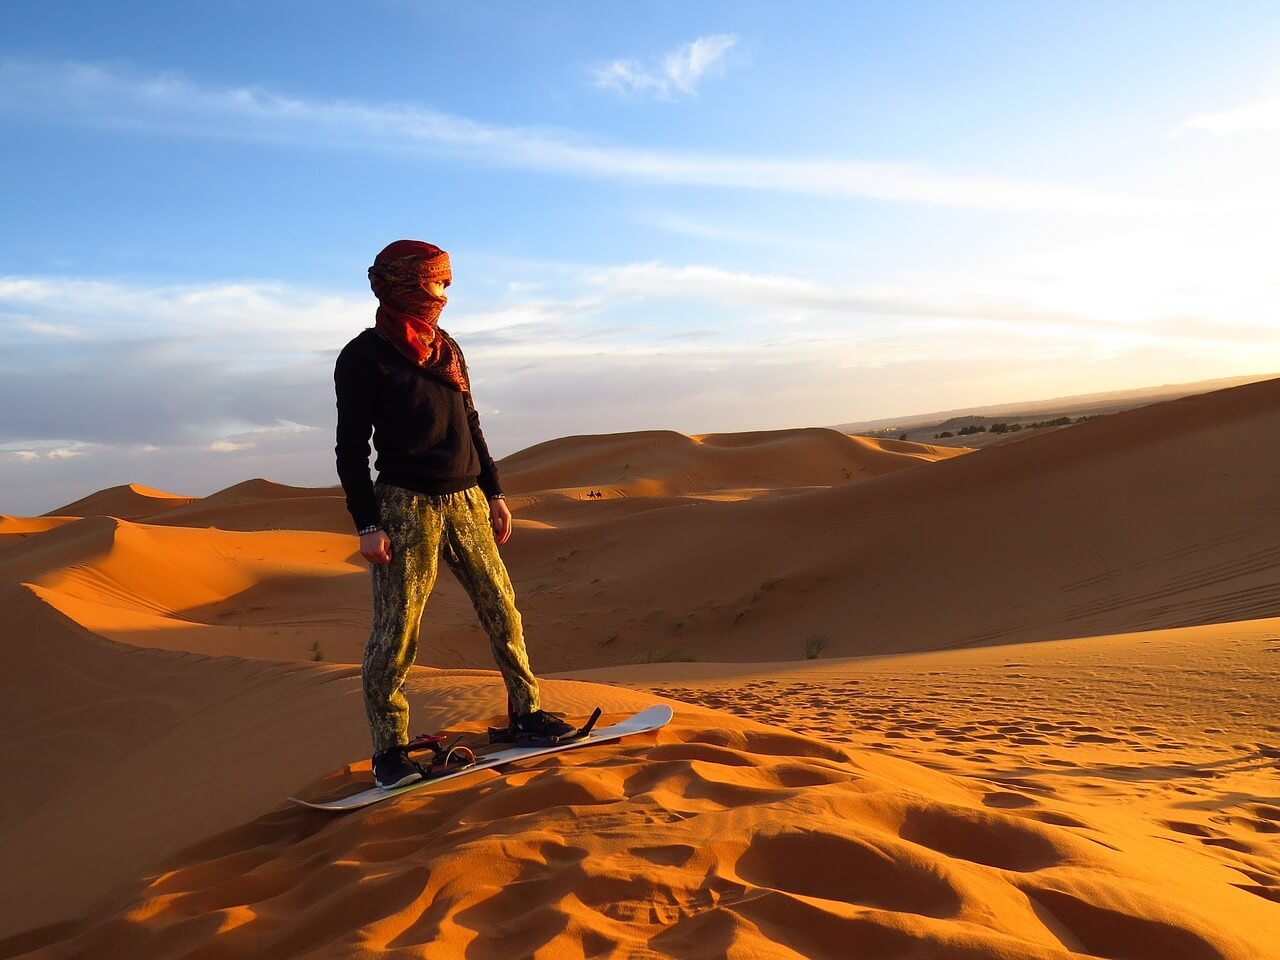 morocco, algeria, desert